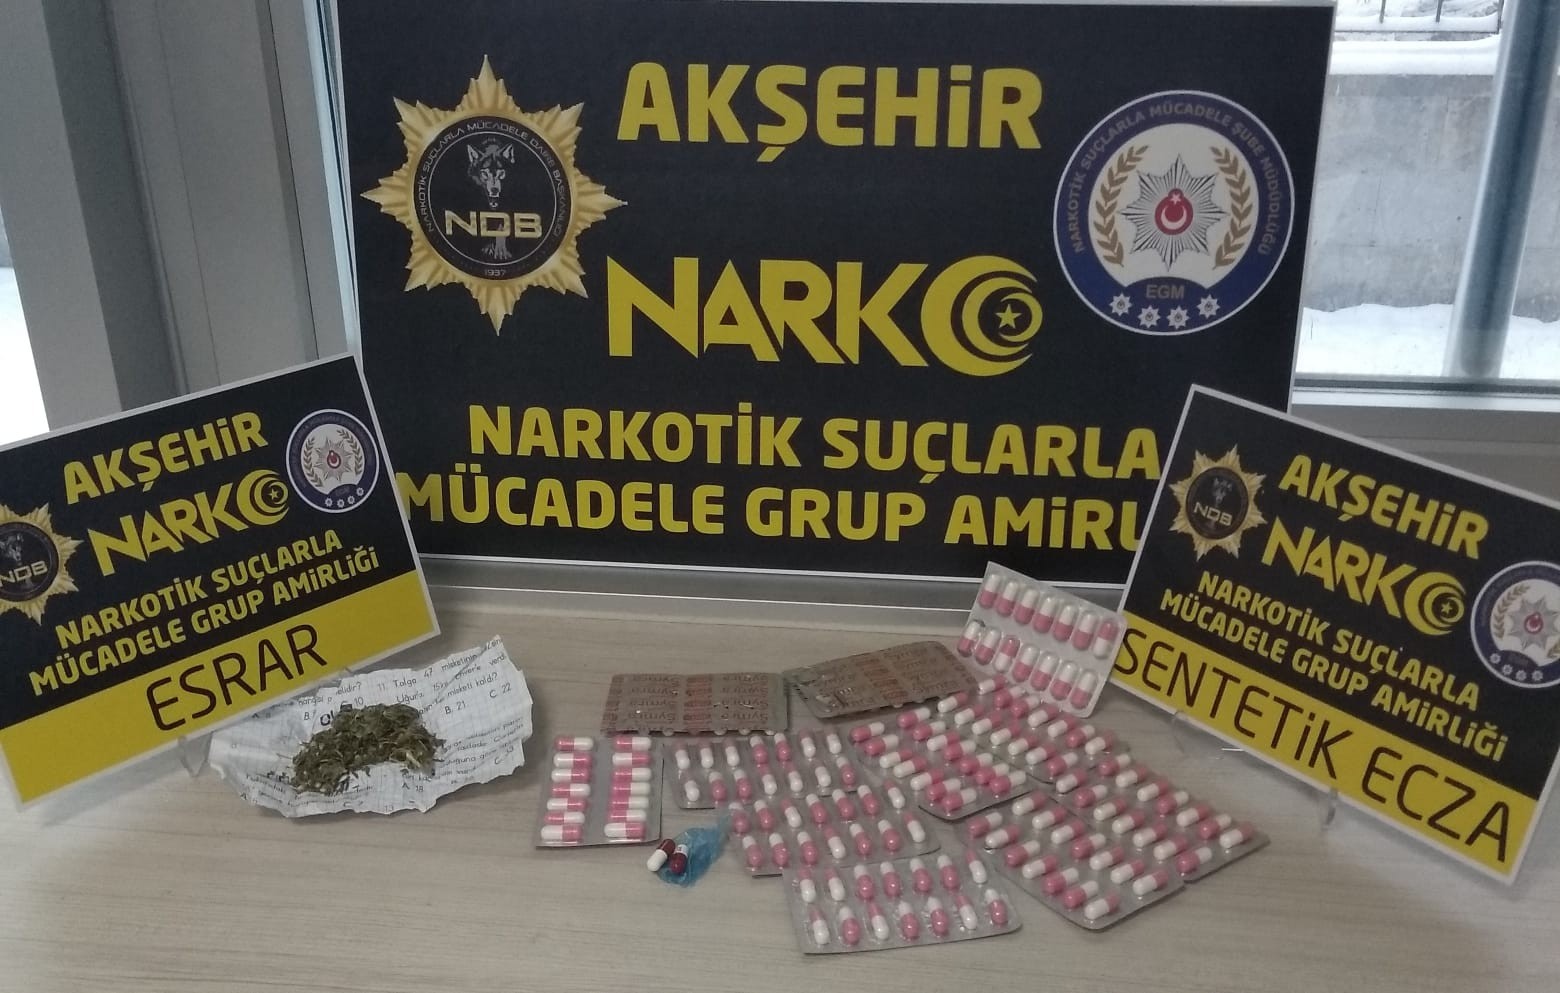 Akşehir’de durdurulan araçta 150 adet uyuşturucu hap ele geçirildi #konya